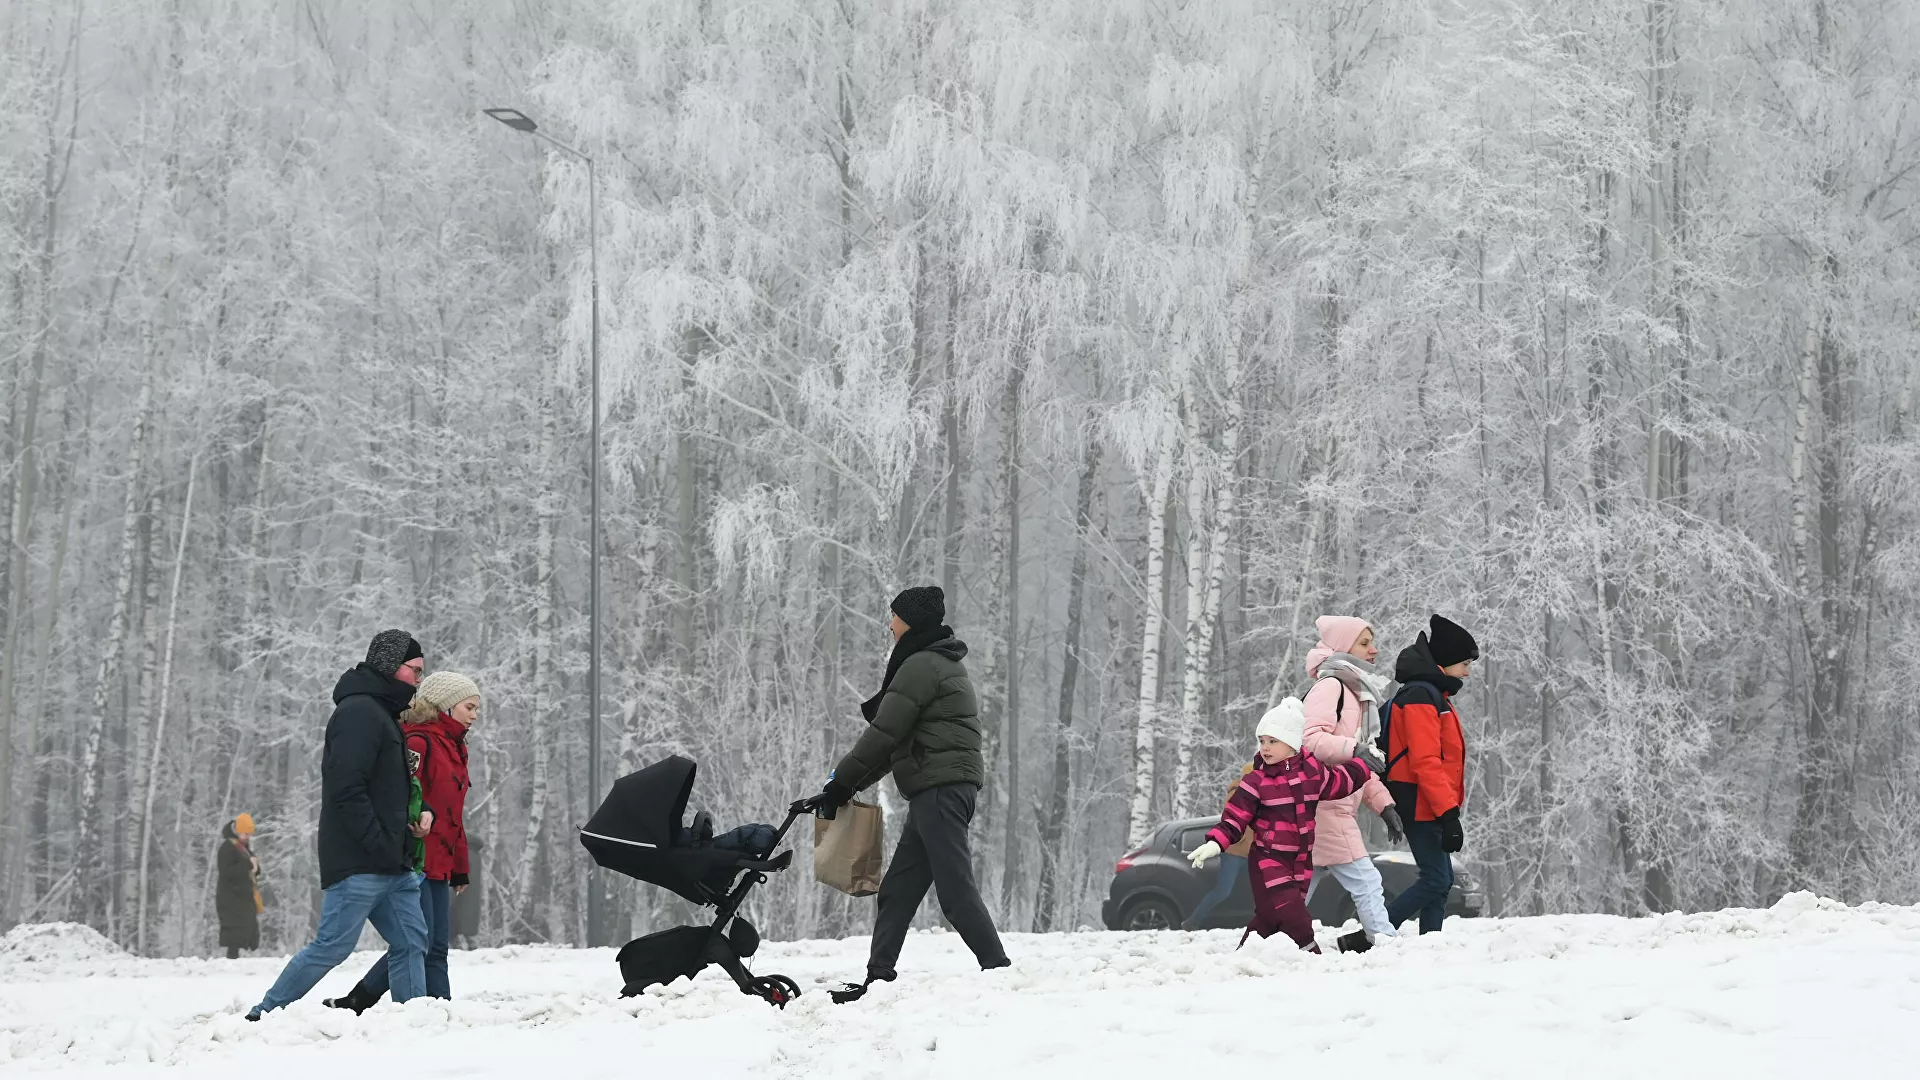 Moskova'da 28 yılın en şiddetli kar yağışı